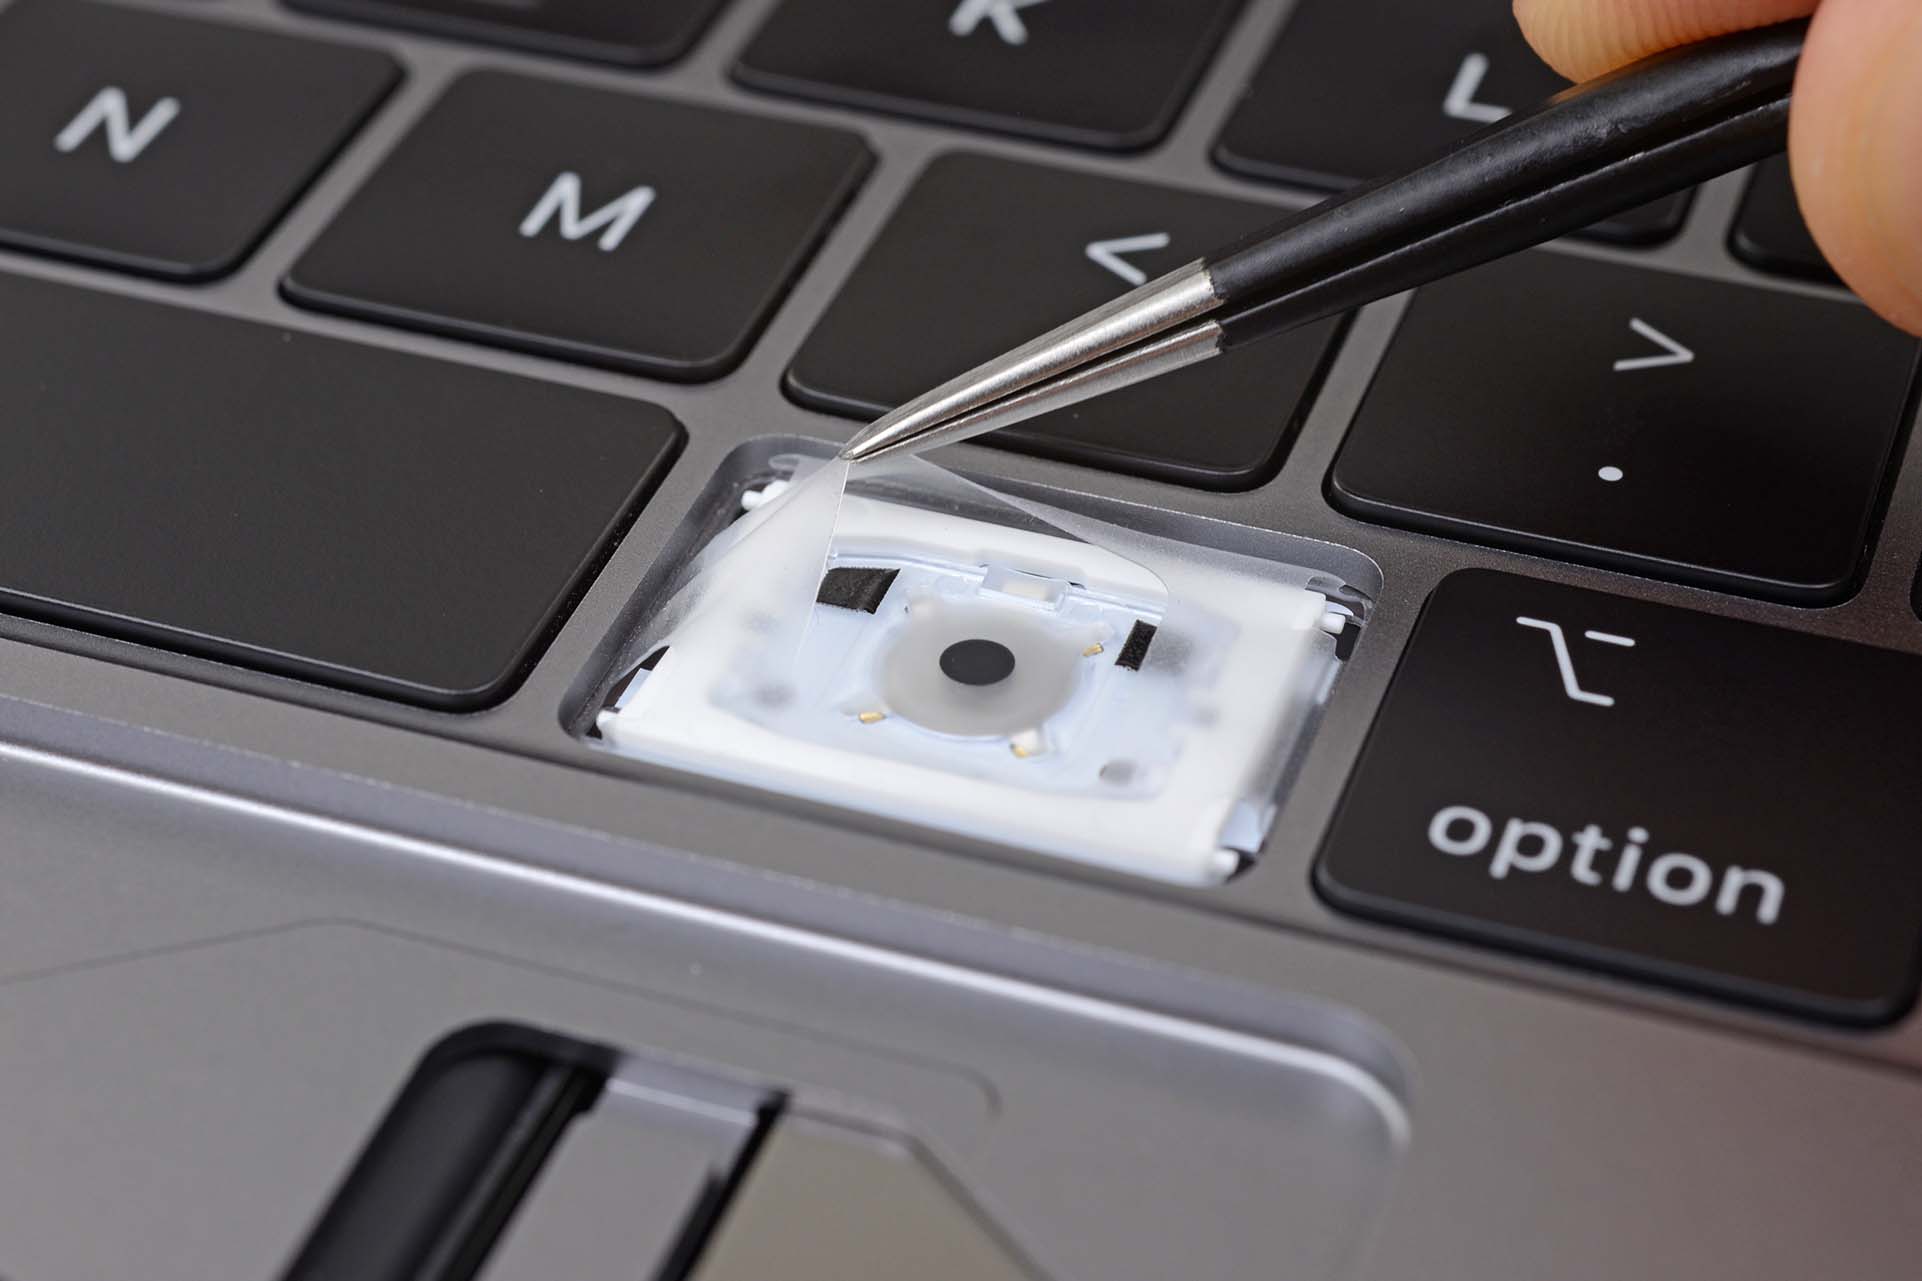 macbook key cap replacement